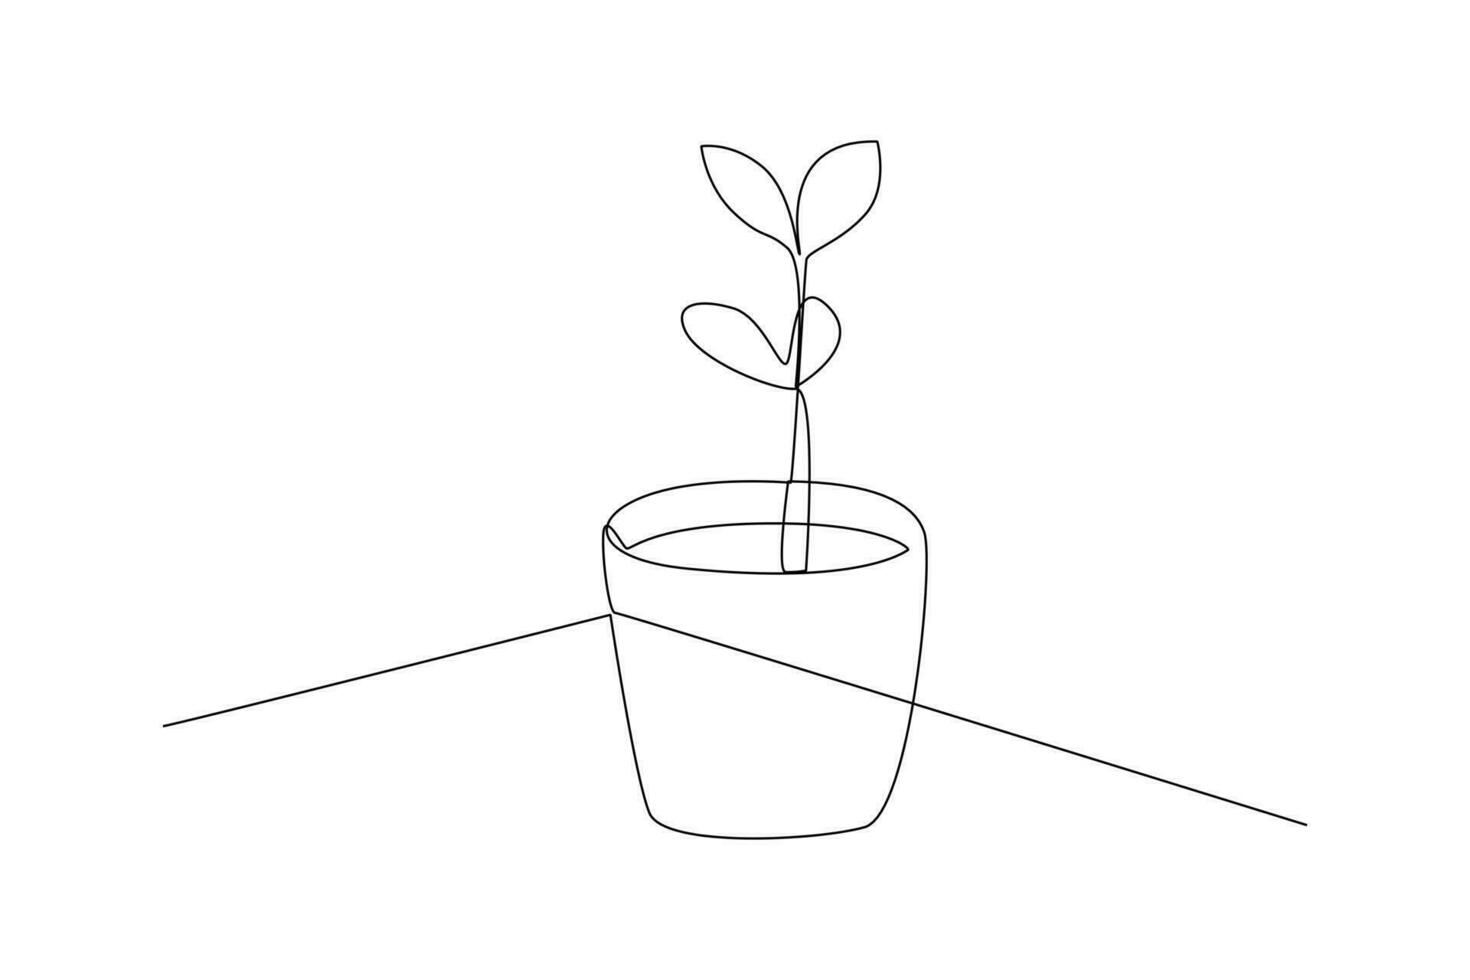 Célibataire un ligne dessin les plantes et herbes concept. continu ligne dessiner conception graphique vecteur illustration.